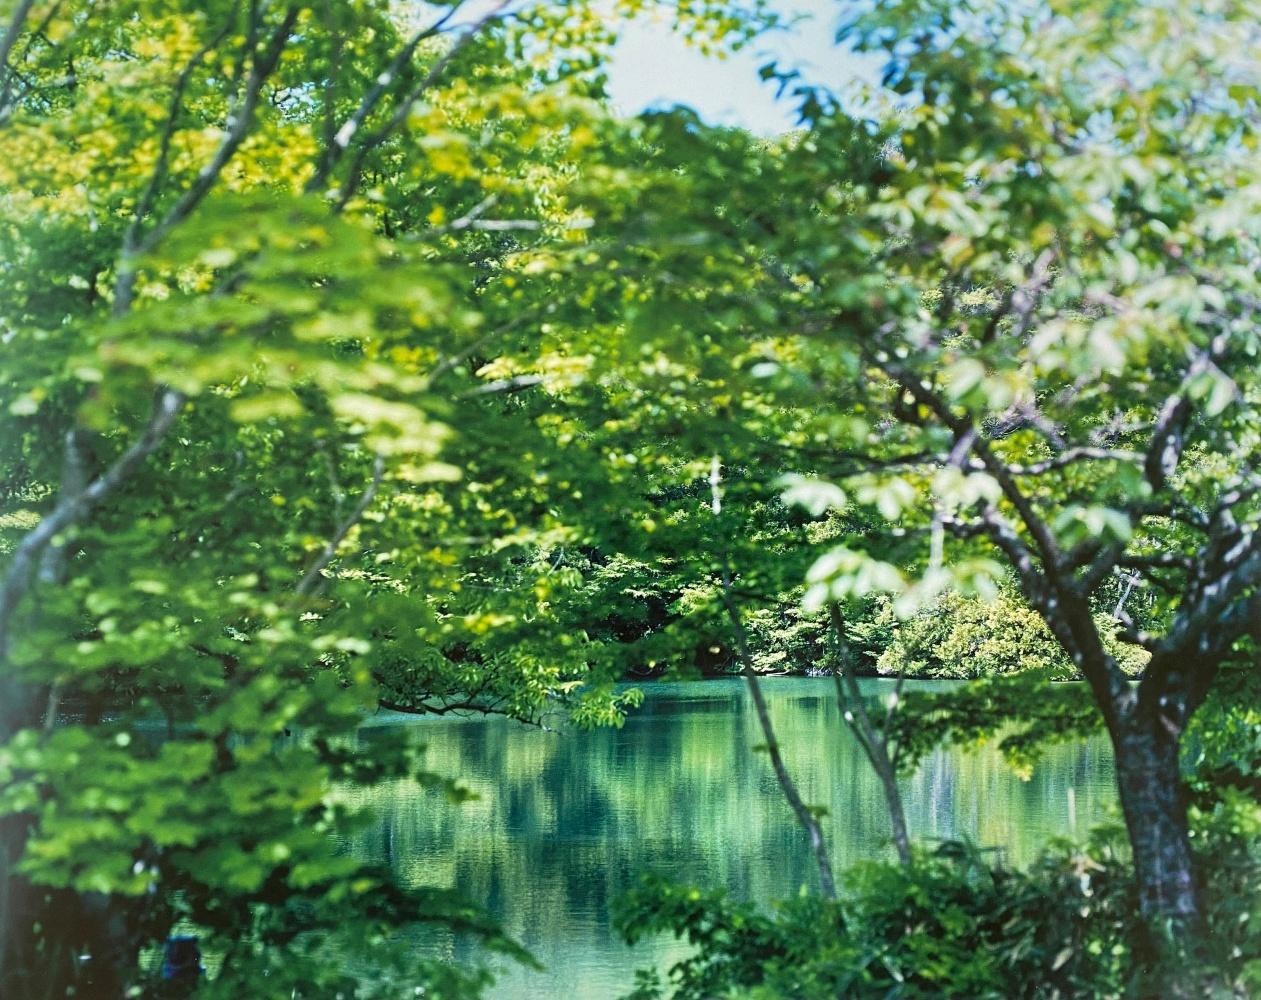 Wasserspiegel 17, WM-769 - Risaku Suzuki, Natur, Baum, Wasser, Reflexion